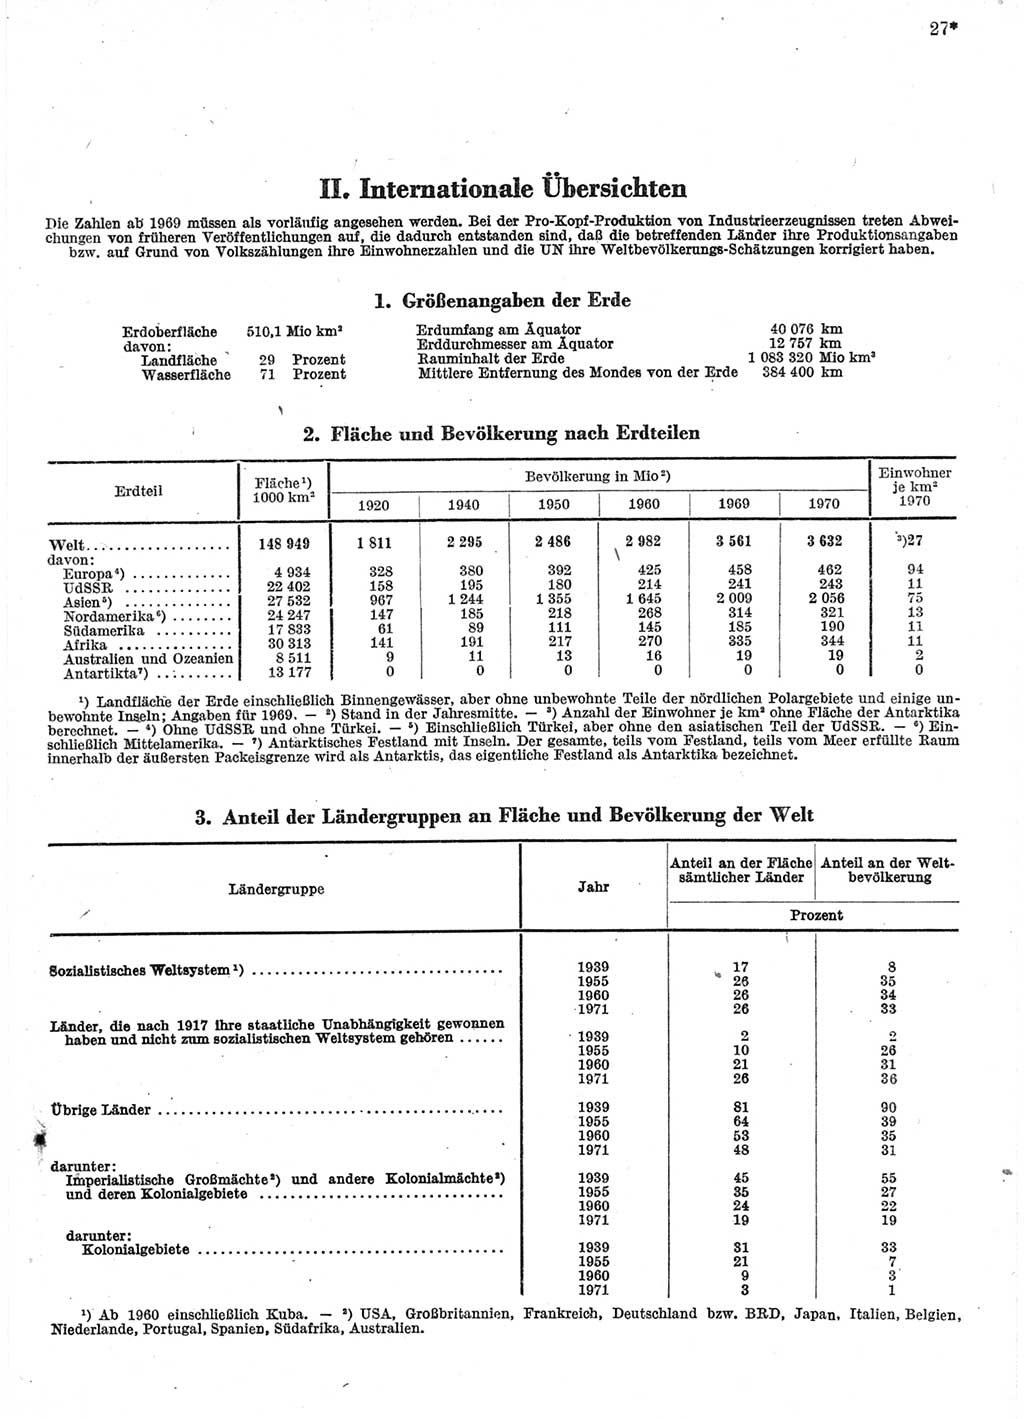 Statistisches Jahrbuch der Deutschen Demokratischen Republik (DDR) 1972, Seite 27 (Stat. Jb. DDR 1972, S. 27)